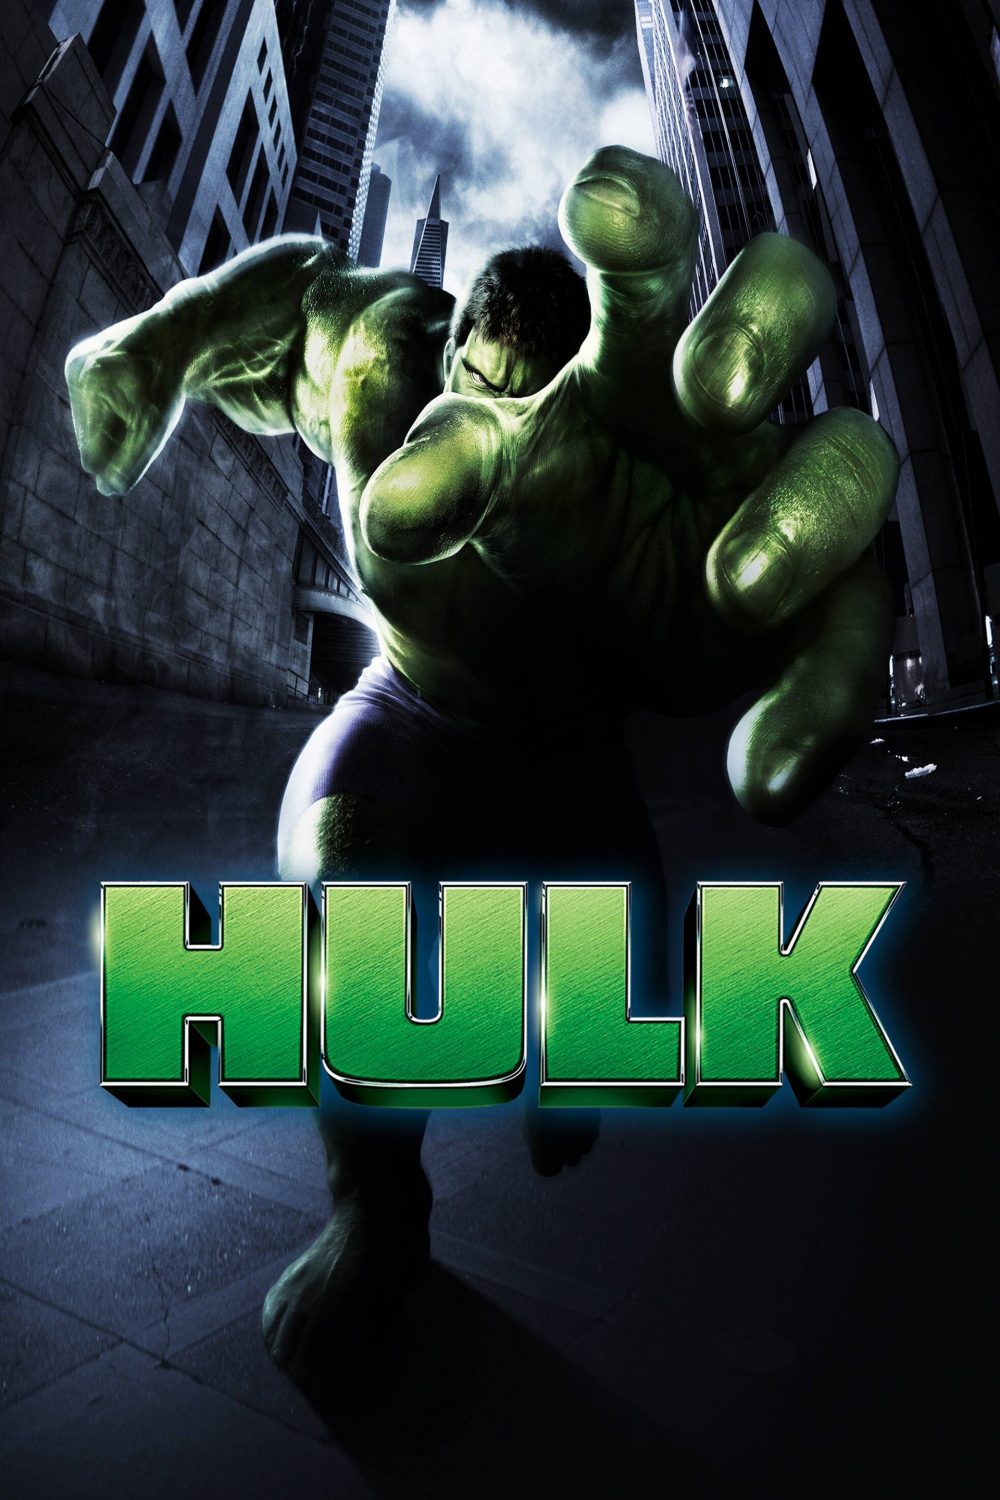 Phim của đạo diễn Lý An: Người khổng lồ xanh – Hulk (2003)